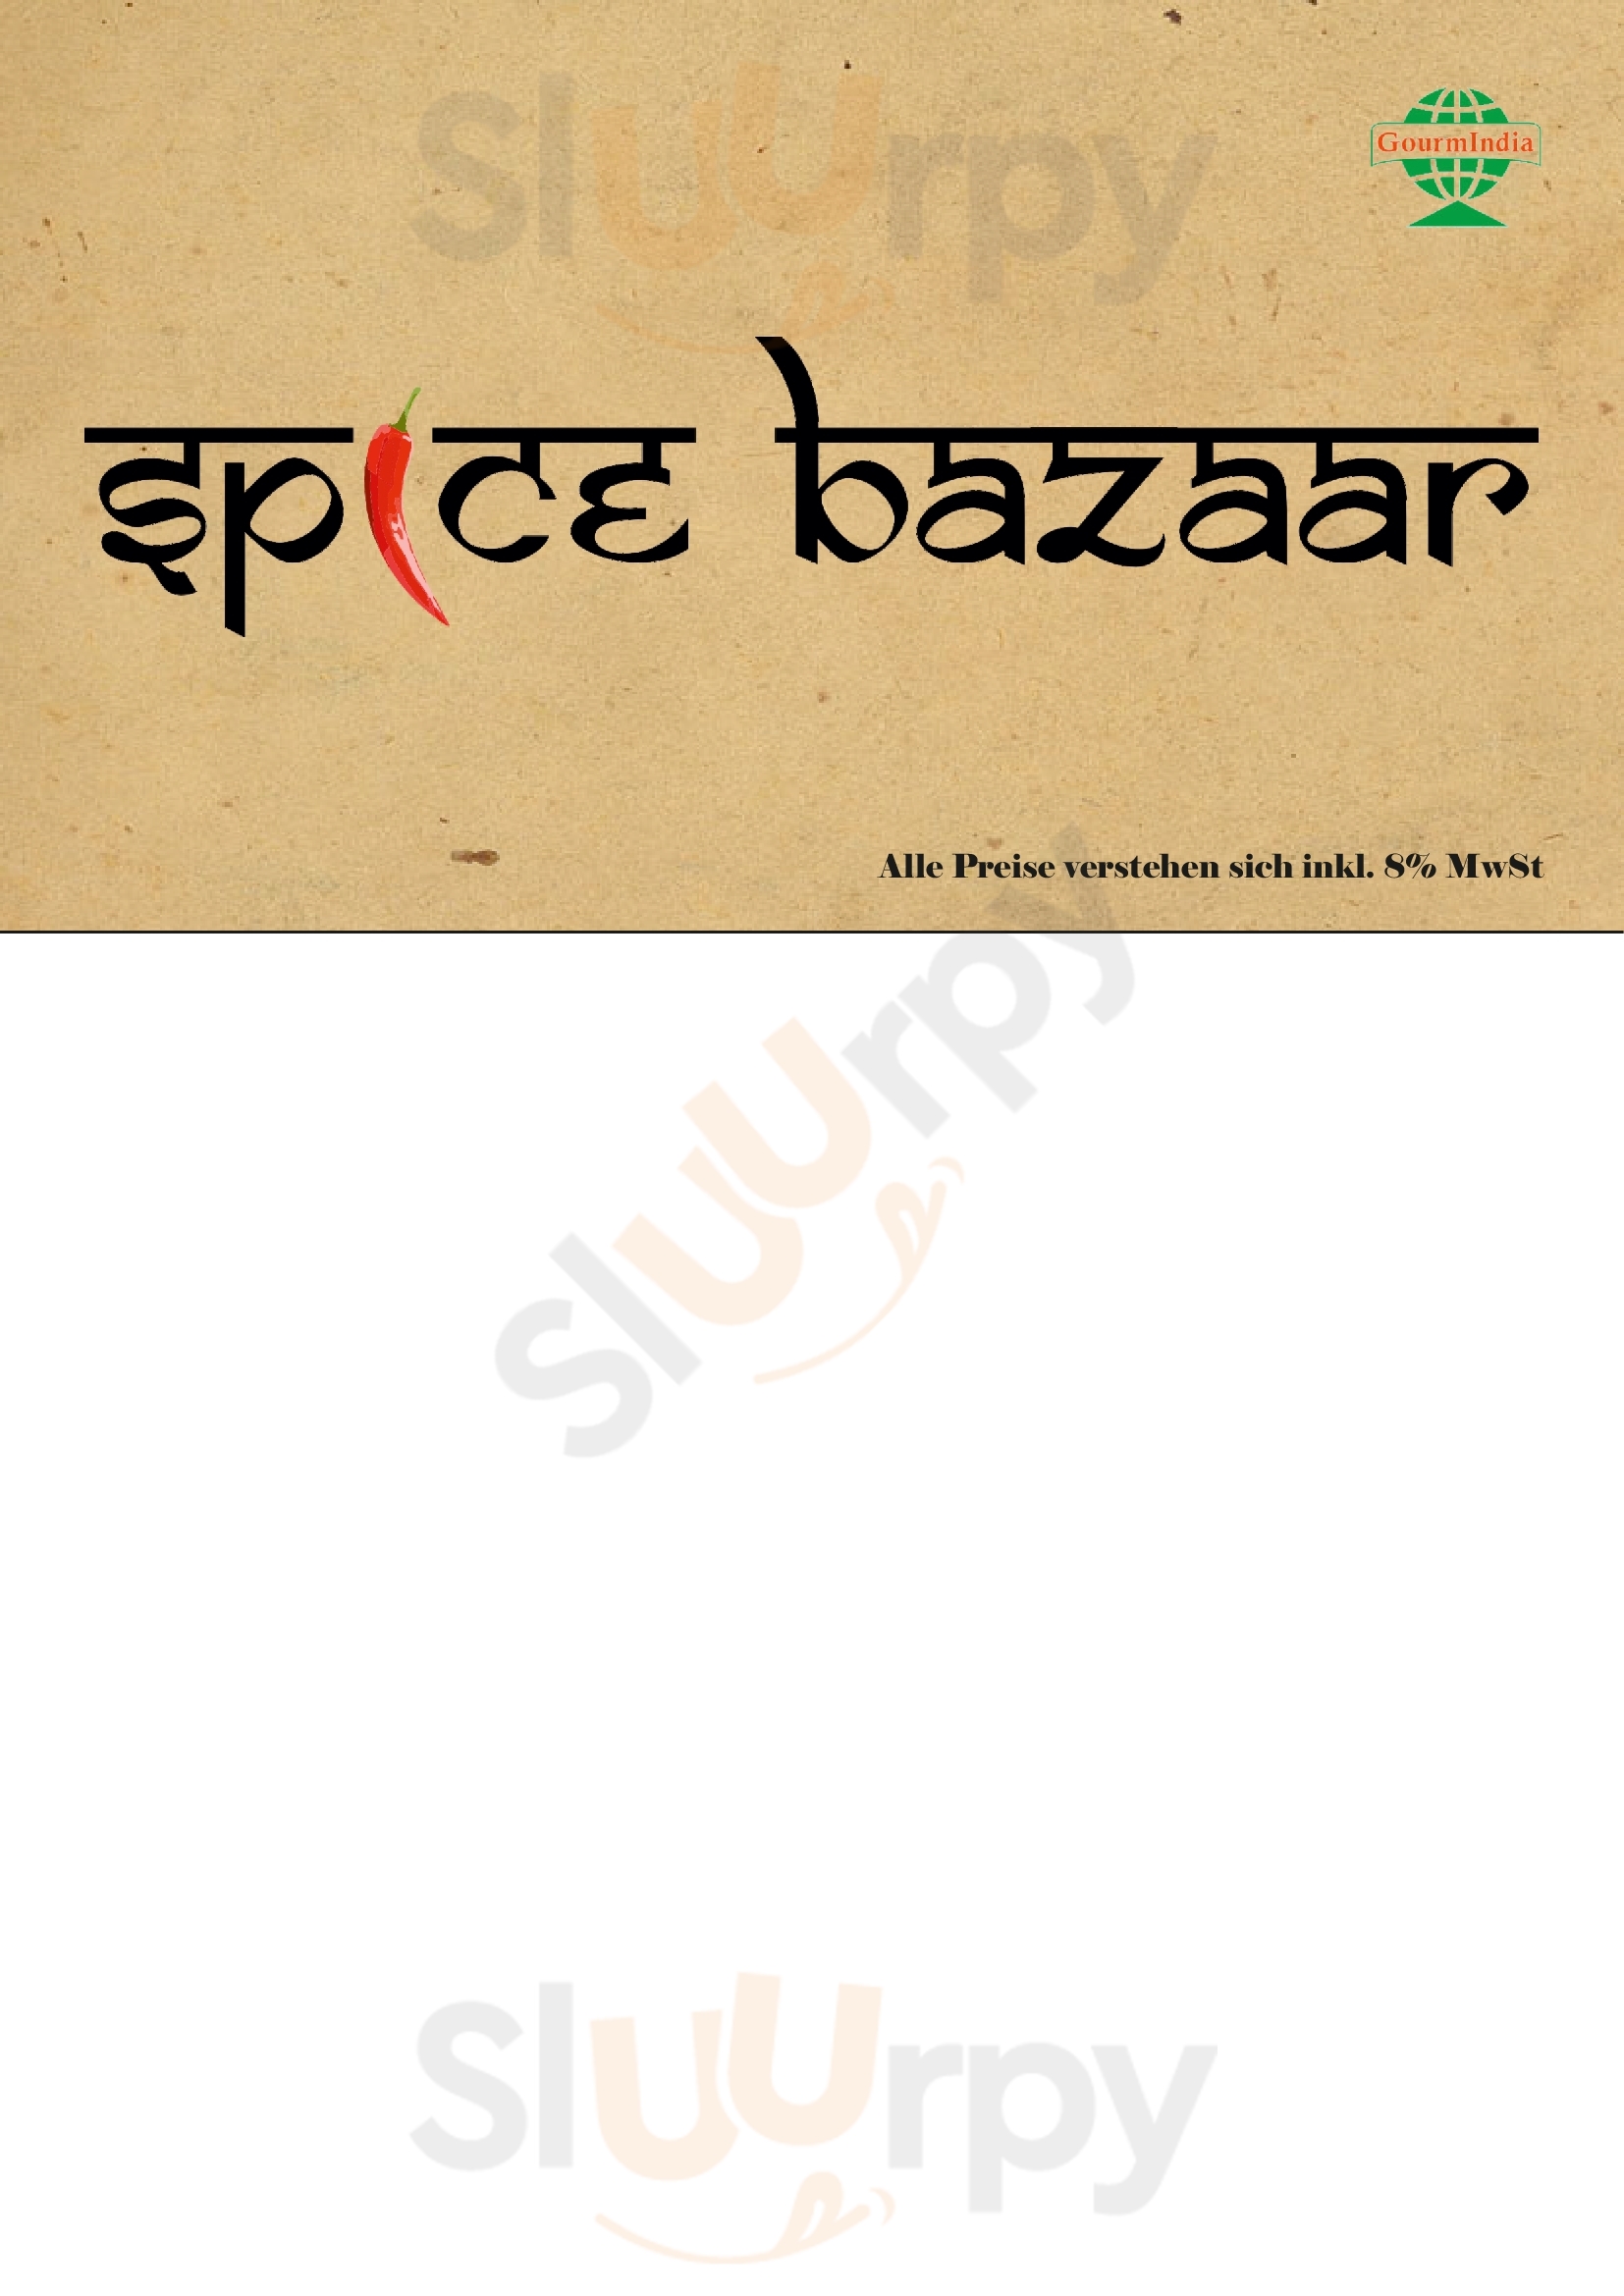 Spice Bazaar Engelberg Menu - 1